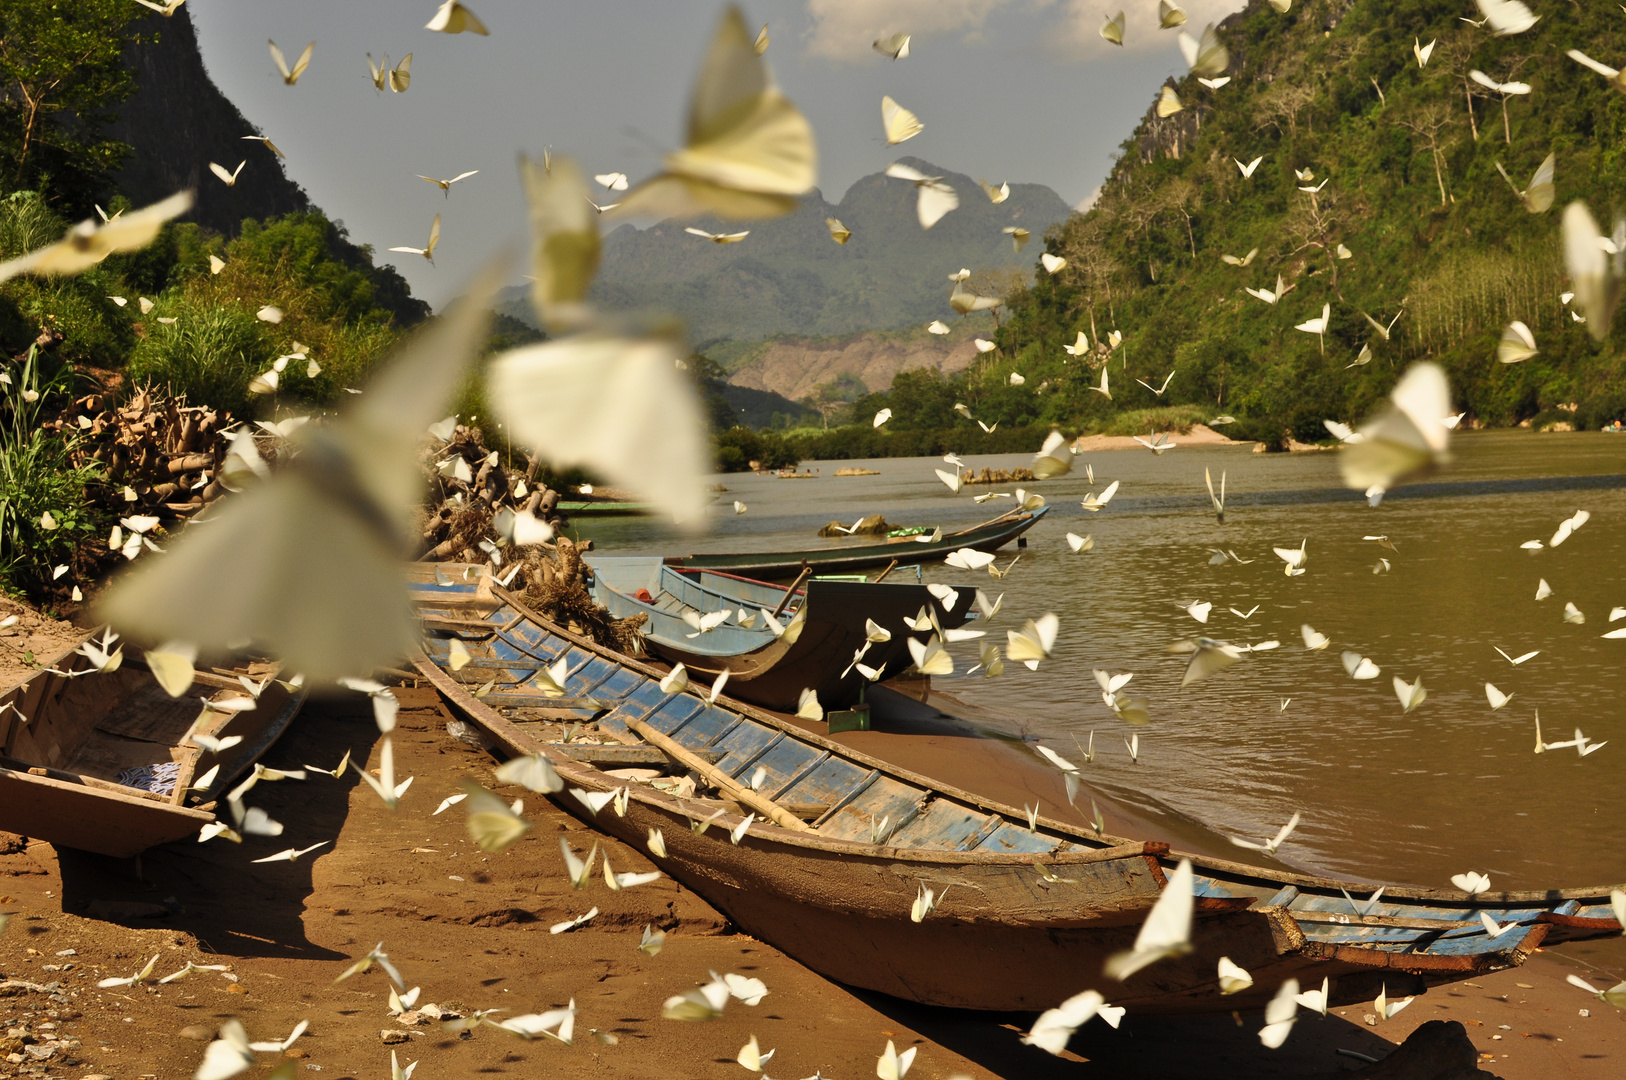 Laos - Mekong river